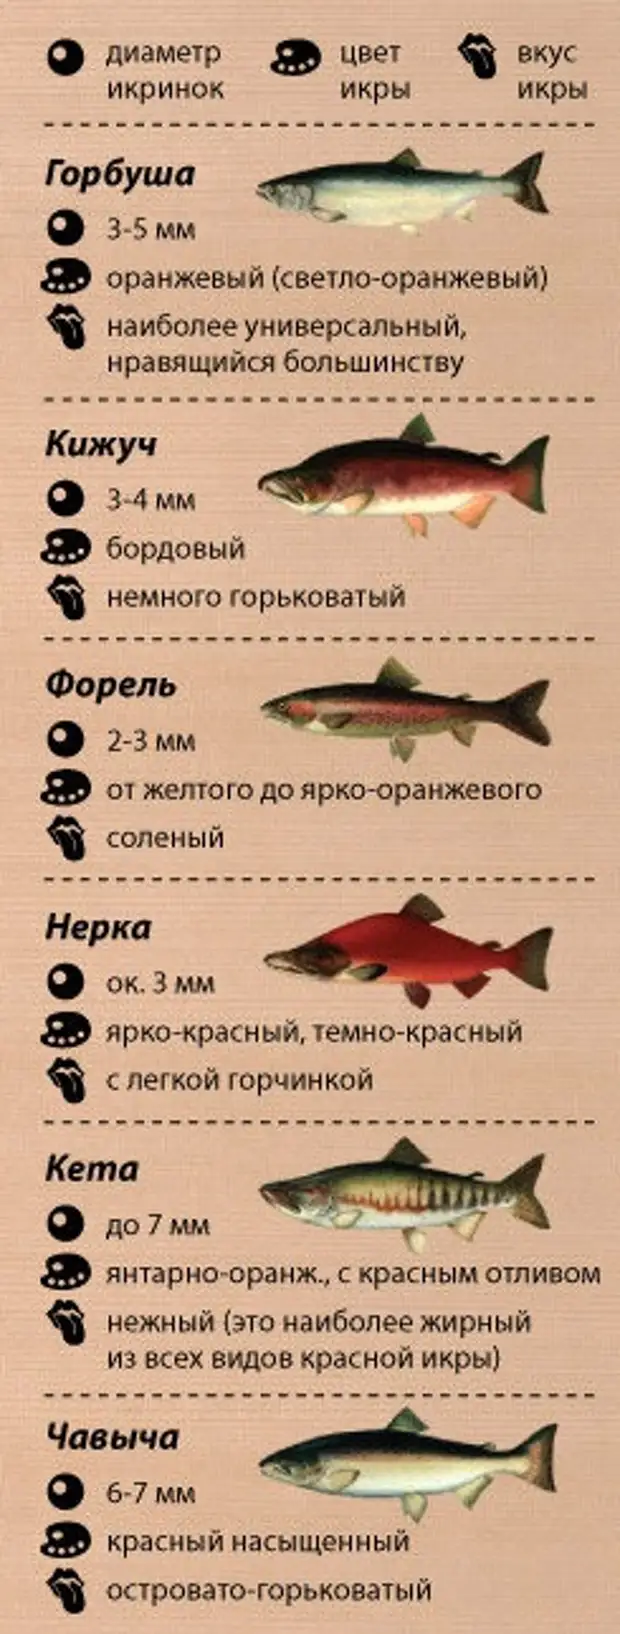 Лососевые рыбы по ценности